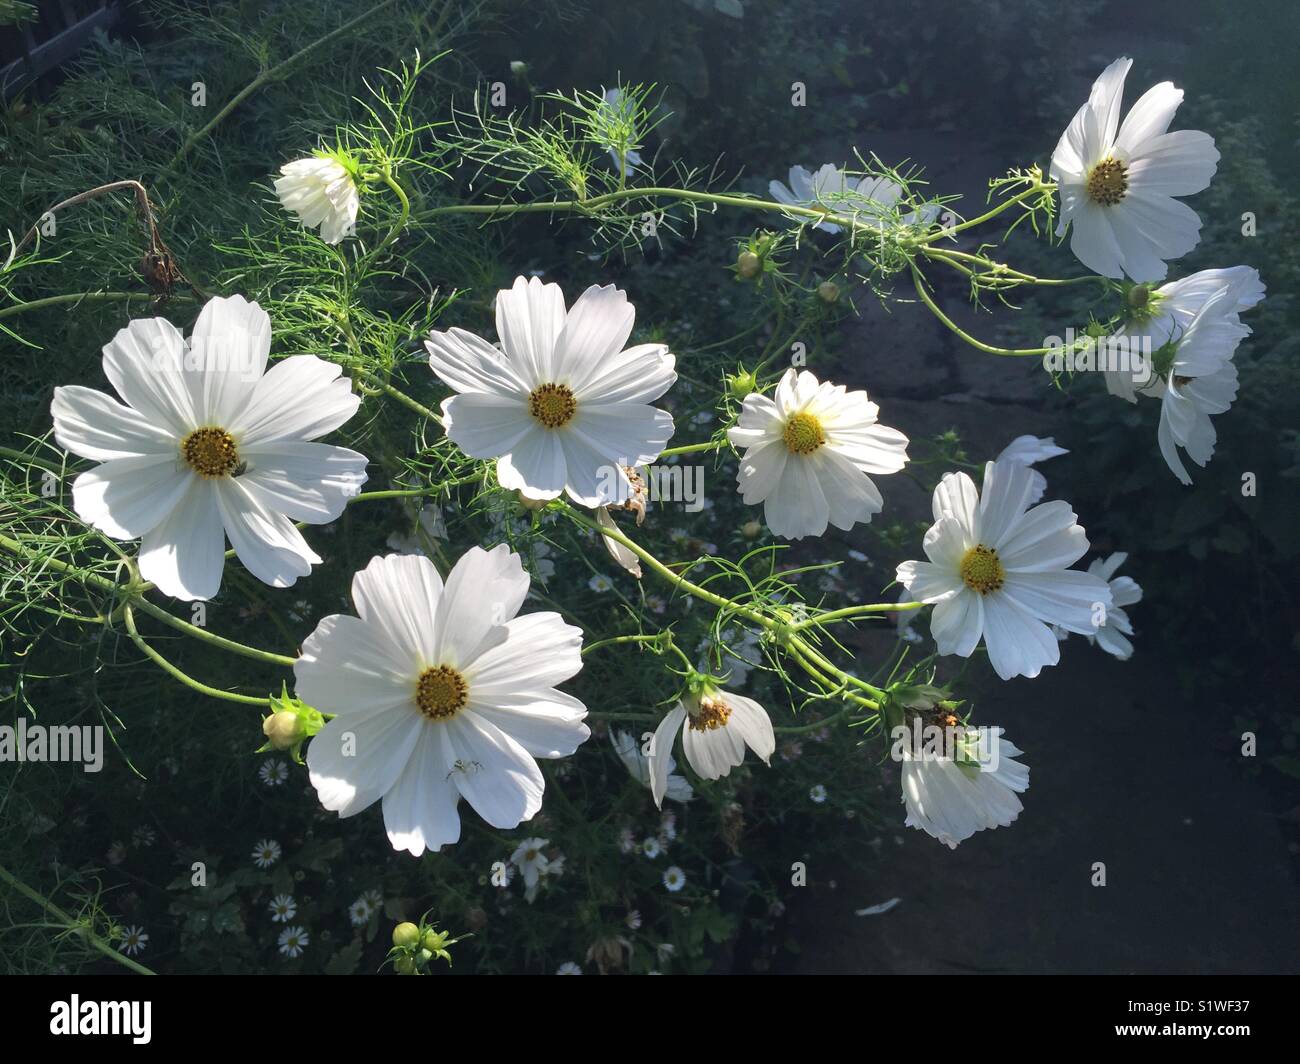 Cosmos 'Reinheit' am frühen Morgen. Asteraceae, Garten Pflanze, Cottage Garten, Blume, weiß. Stockfoto